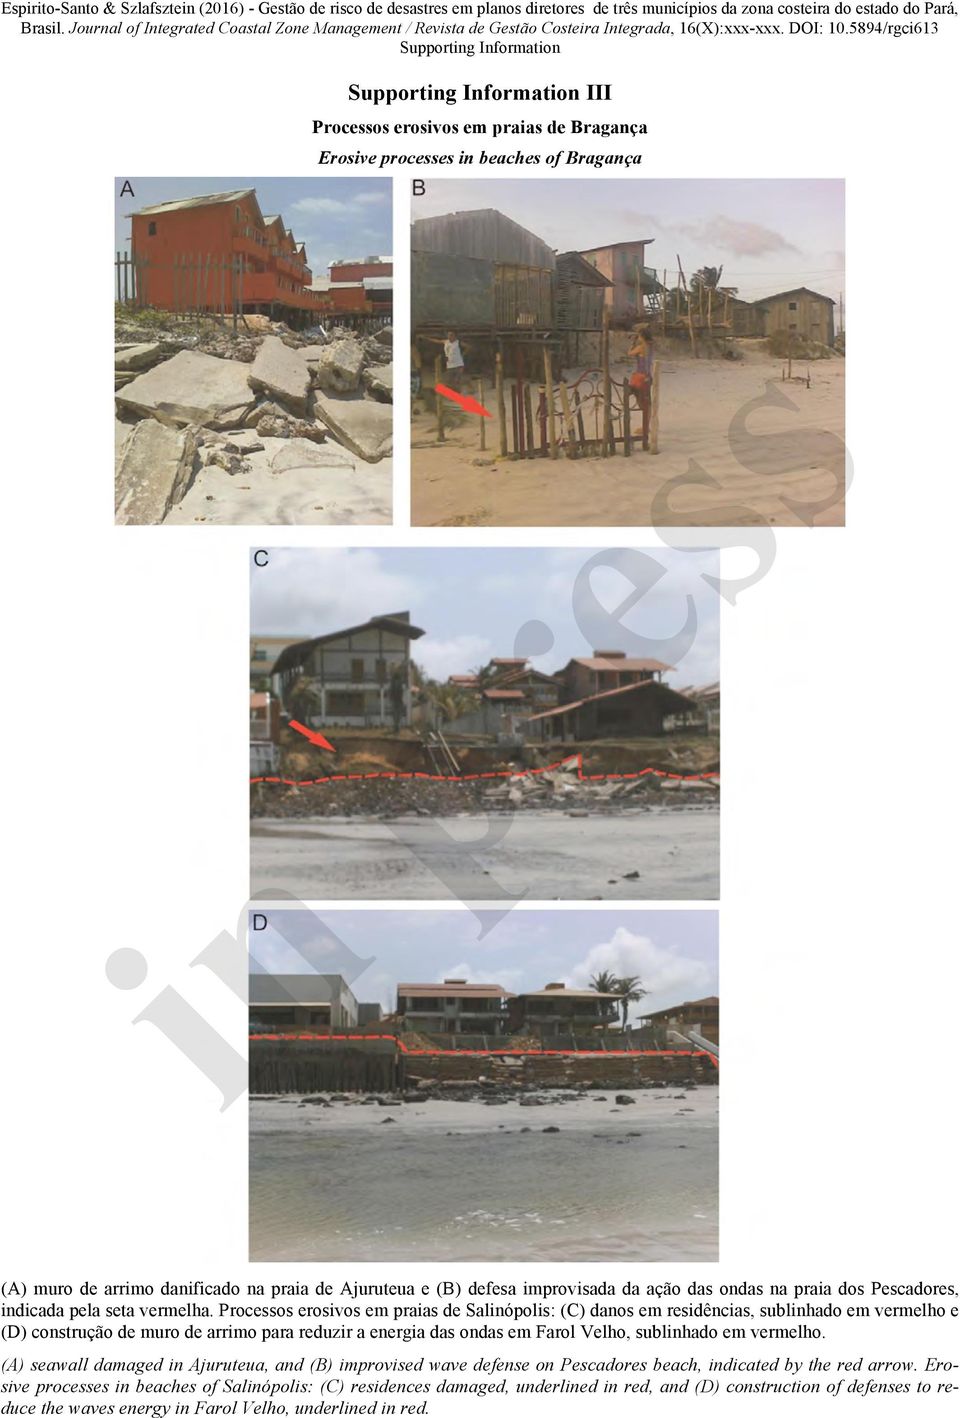 Processos erosivos em praias de Salinópolis: (C) danos em residências, sublinhado em vermelho e (D) construção de muro de arrimo para reduzir a energia das ondas em Farol Velho,